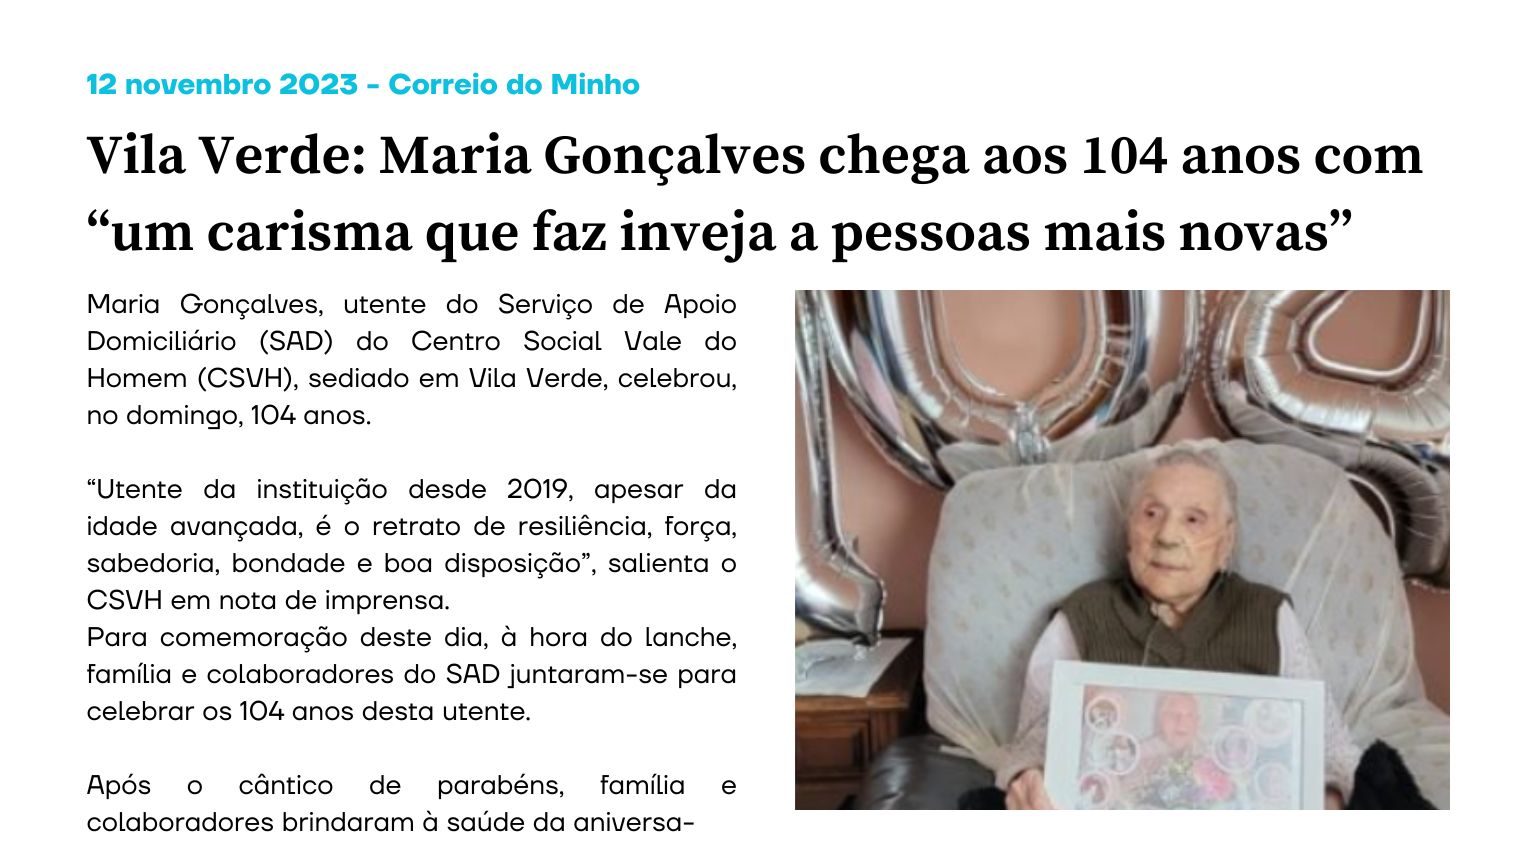 Vila Verde: Maria Gonçalves chega aos 104 anos com “um carisma que faz inveja a pessoas mais novas”